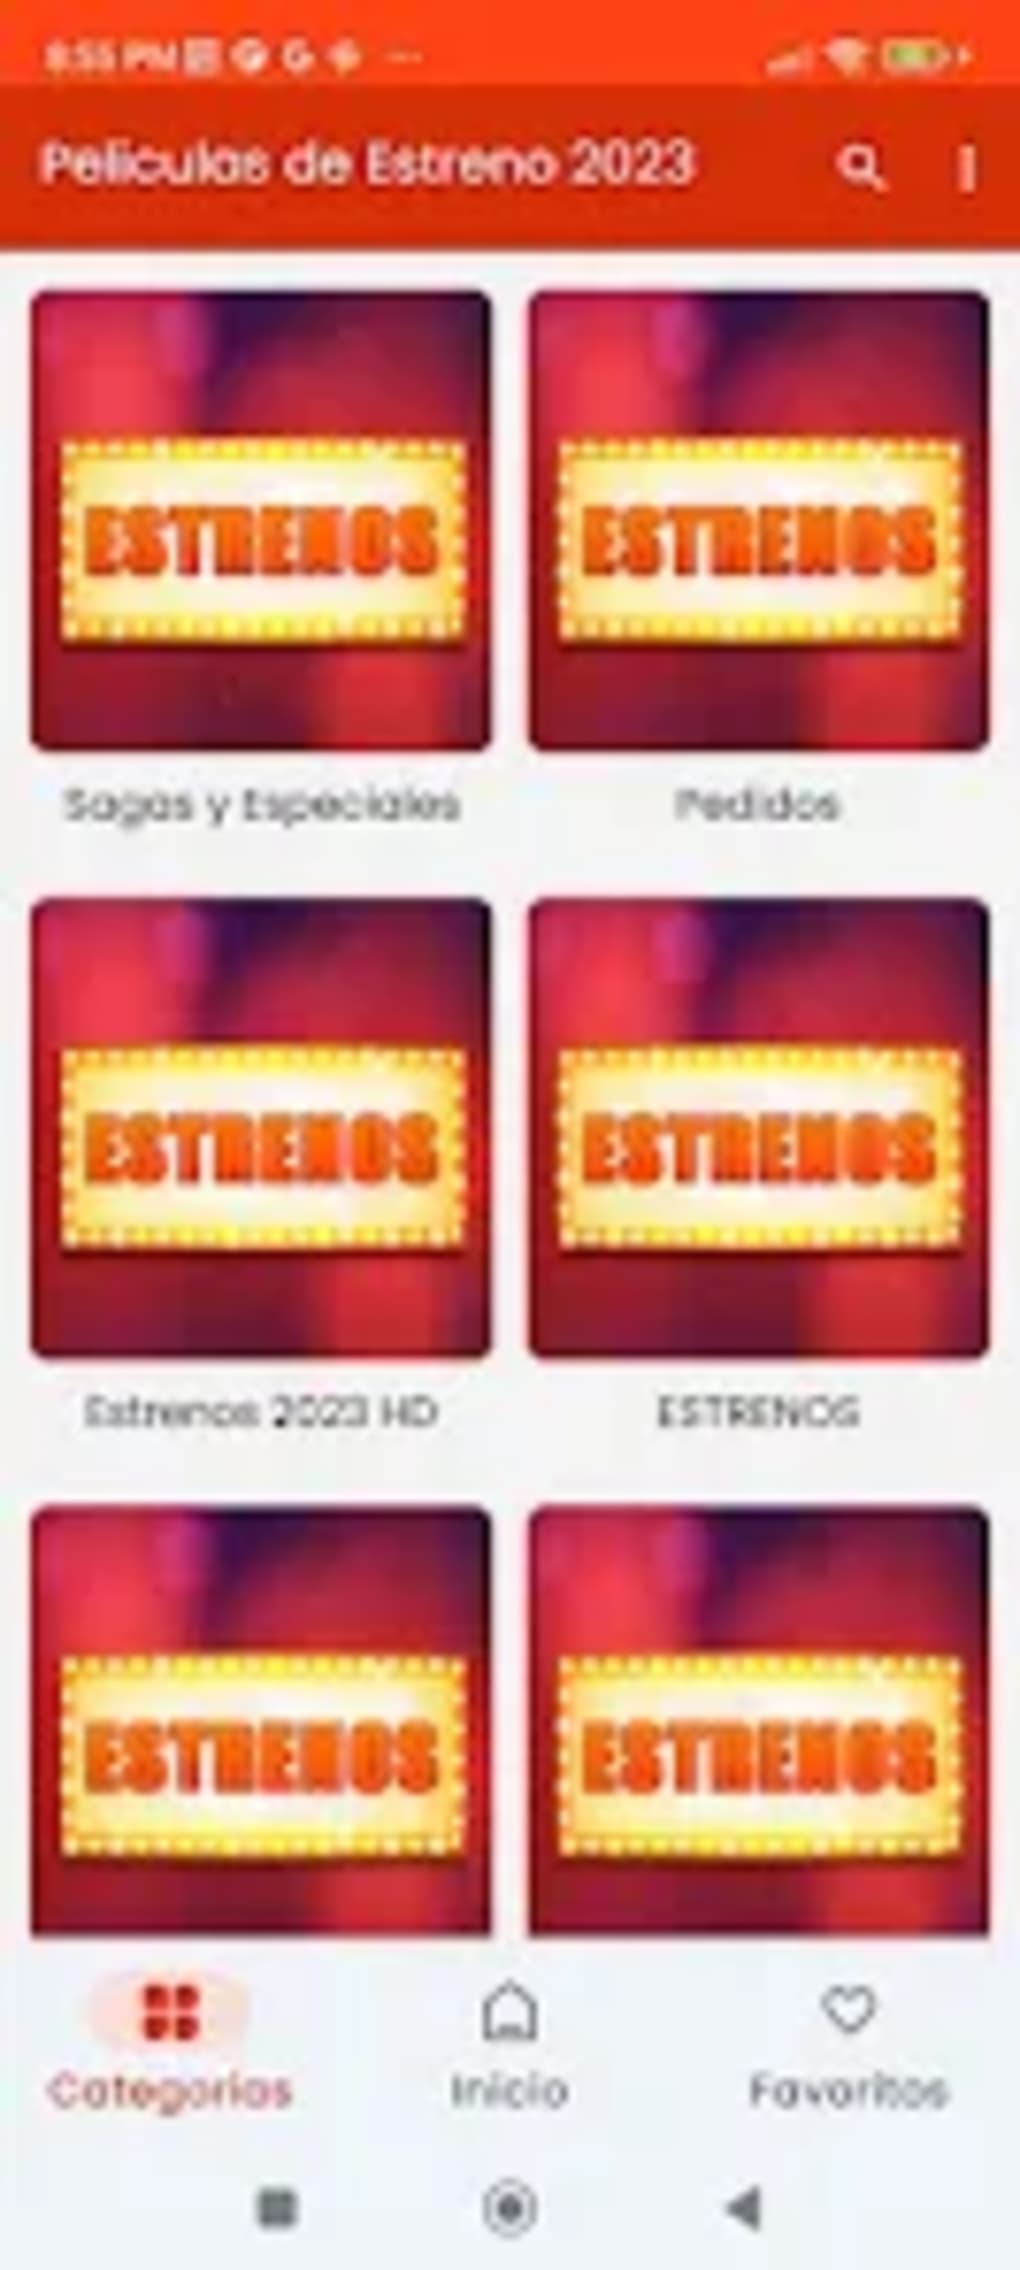 Peliculas De Estreno 2023 For Android Download 